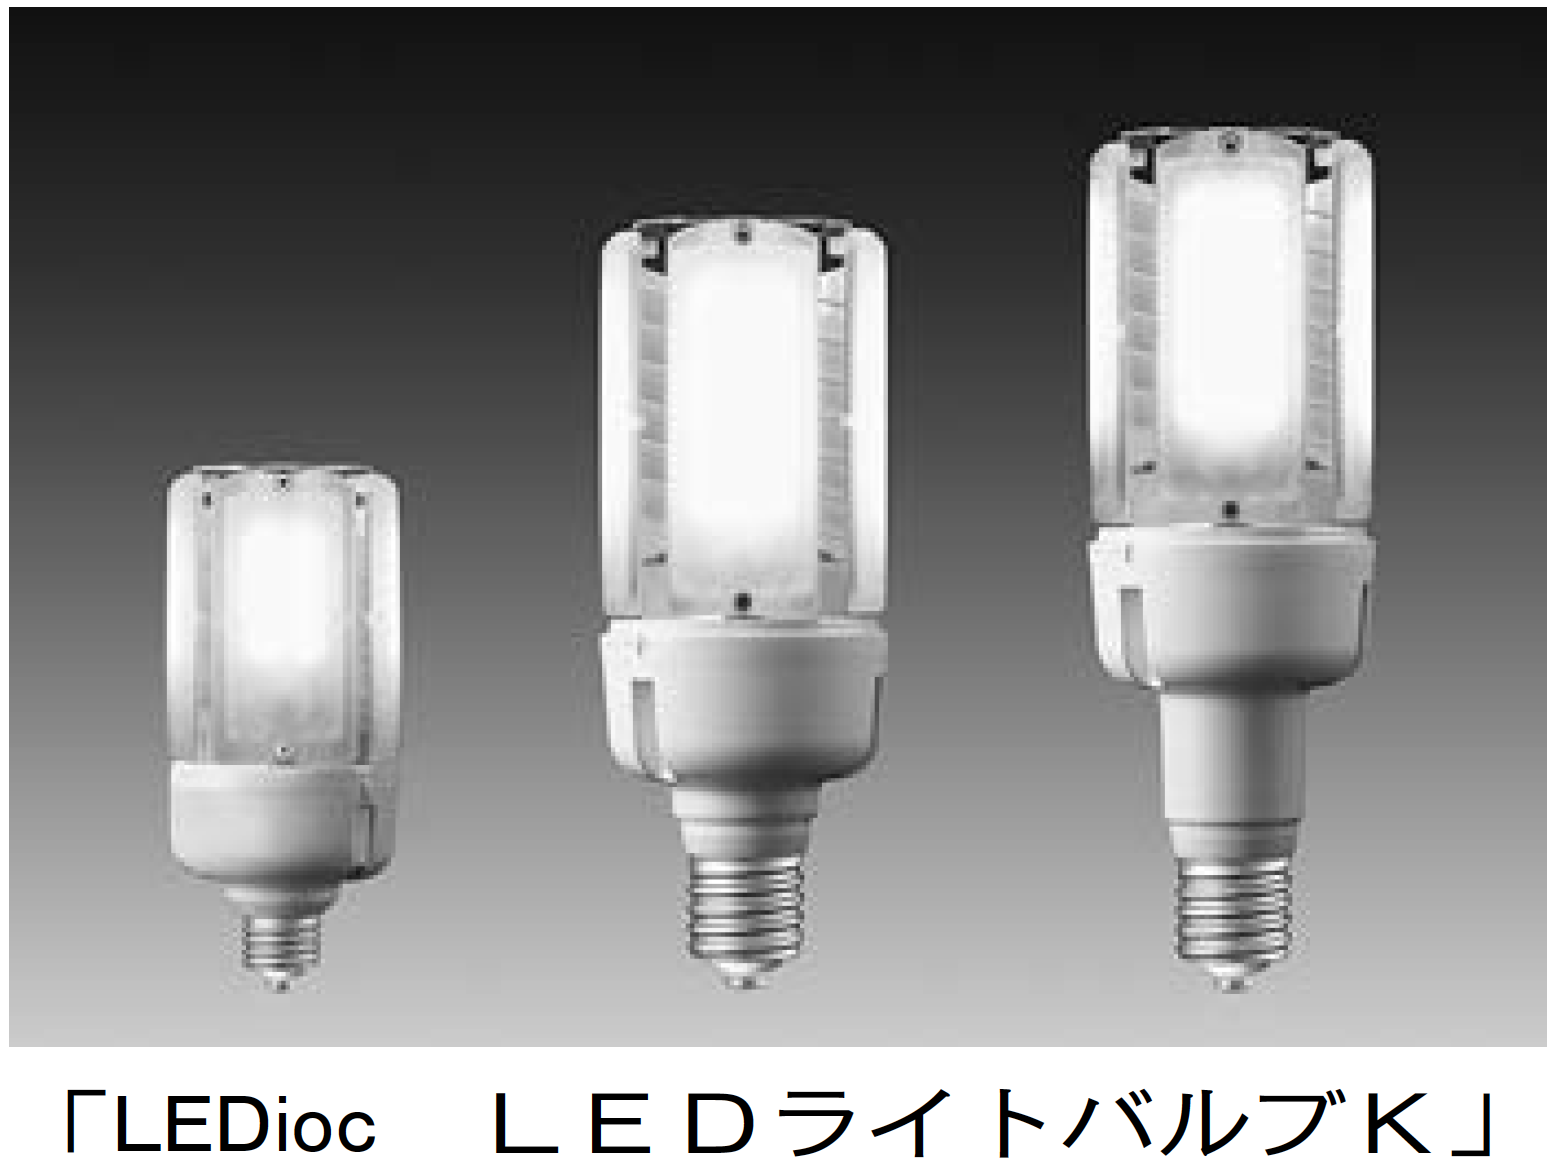 【岩崎電気】ラインアップを拡充 「LEDioc LED ライトバルブK」の画像